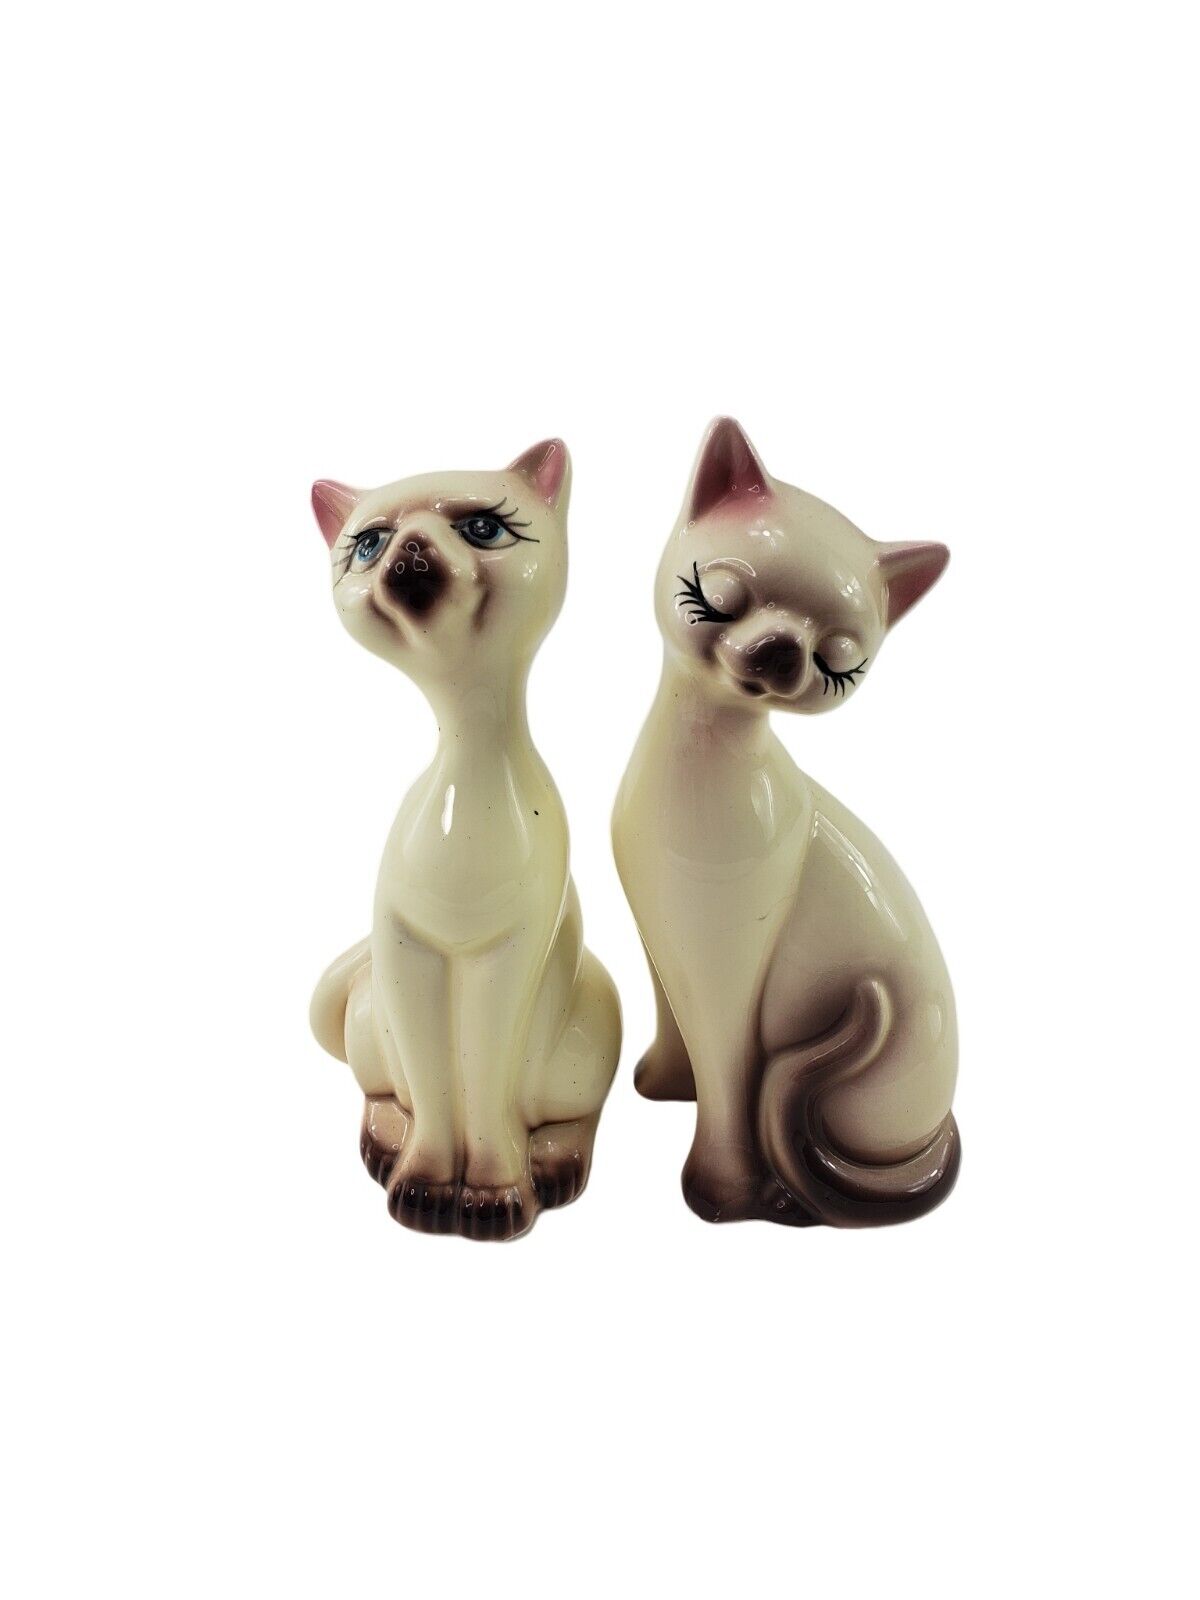 Vintage Ceramic Siamese Cat Statue Figurines MCM Pair Lot Set of 2 